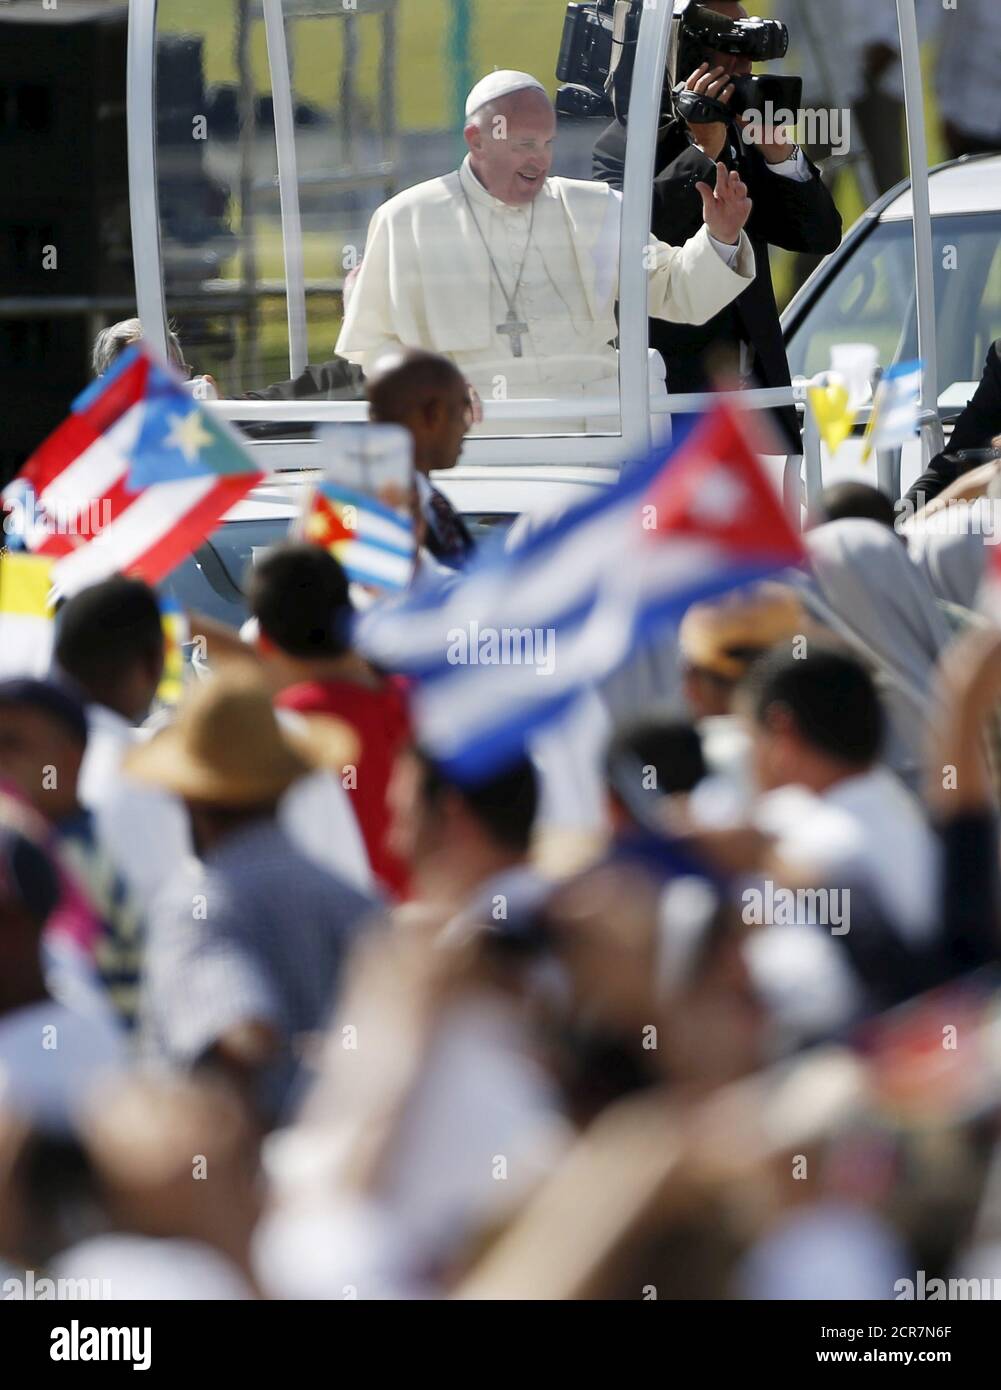 Papst Franziskus winkt der Menge in Holguin, Kuba, 21. September 2015. Papst Franziskus kam am Montag in Ostkuba an, um die zweite Messe einer Reise zu feiern, die ihm Lob für die Unterstützung der kommunistischen Herrscher bei der Annäherung an Washington eingebracht hat, während der er sich jedoch von der offenkundigen Politik ferngehalten hat. Er wird der erste Papst sein, der Holguin besucht, die Hauptstadt der Provinz, in der die Castro-Brüder Raul und Fidel aufgewachsen sind. REUTERS/Edgard Garrido Stockfoto